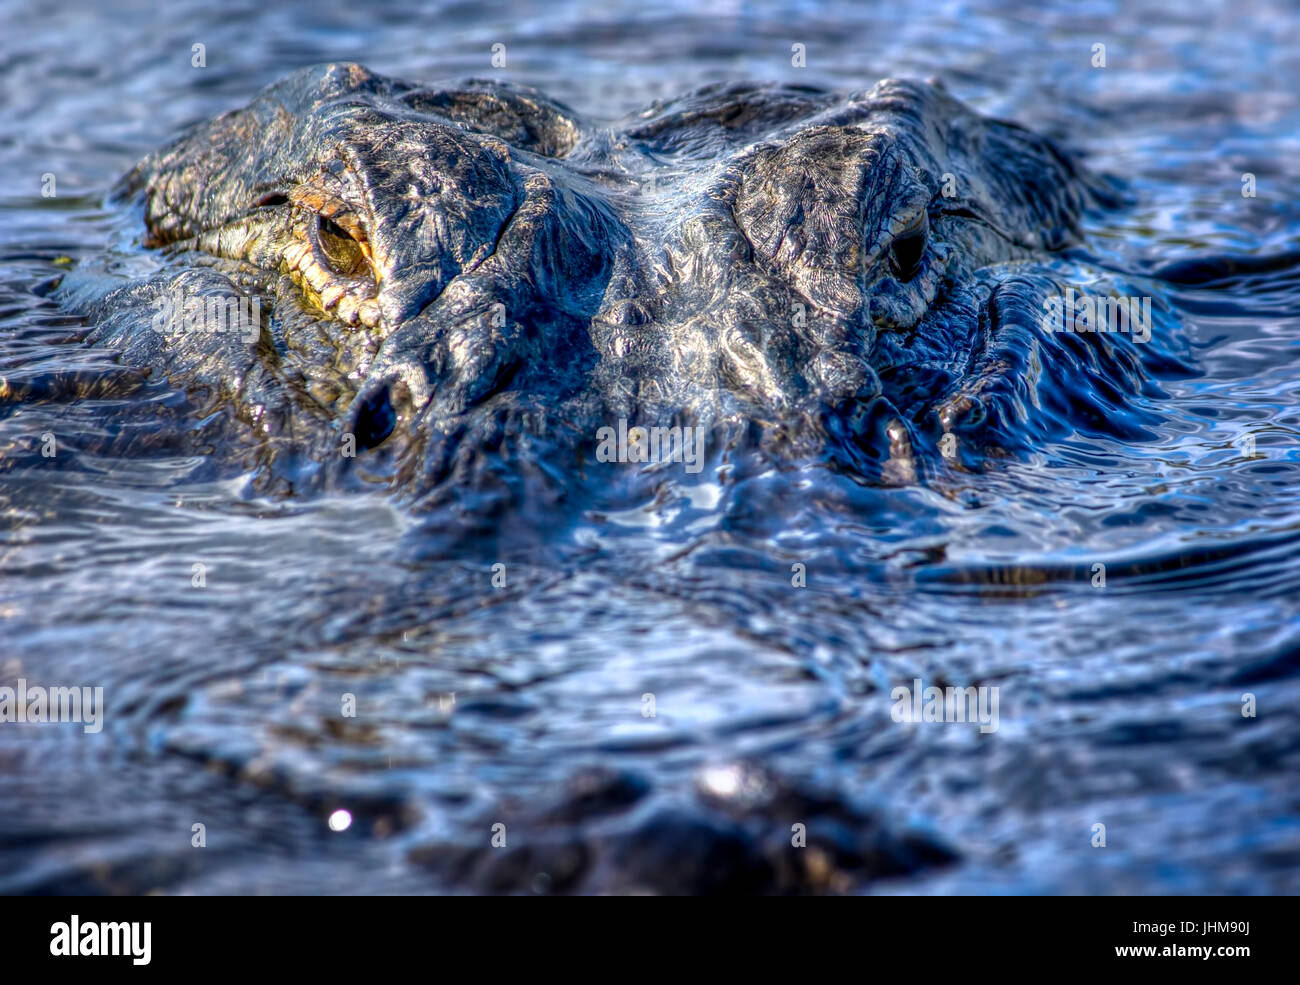 Un 12 piedi alligator guarda direttamente la fotocamera in Everglades della Florida. Questo alligator frequenta la stessa area e compare in molte delle mie foto. Foto Stock